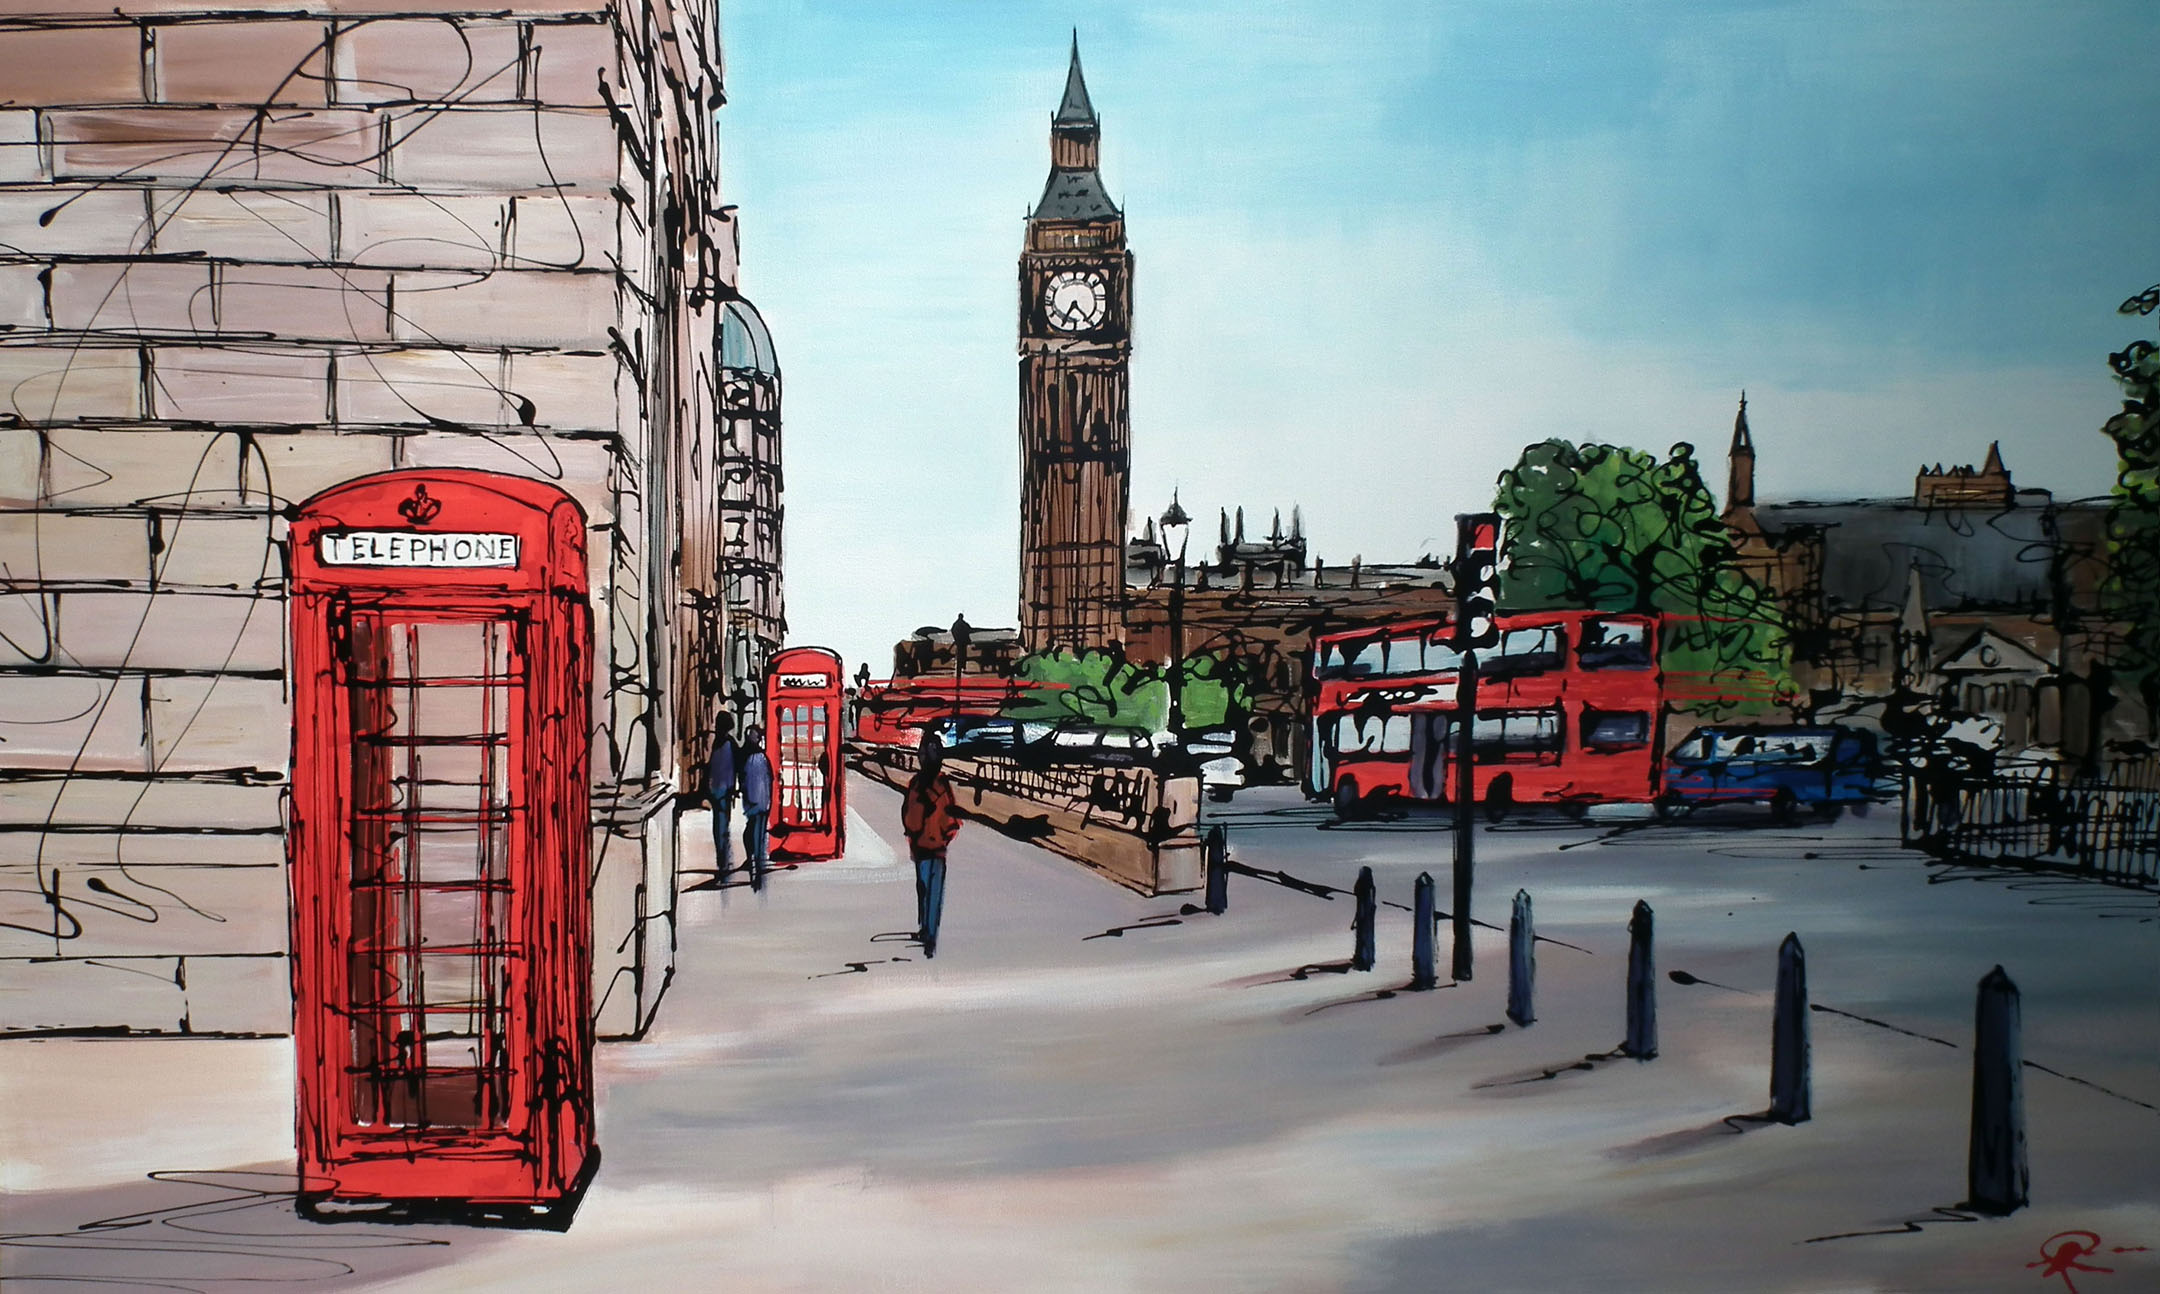 Big ben art. Лондон будка Биг Бен. Пауль Кентон Лондон. Лондон красная телефонная будка и Биг Бен. Улицы Лондона Биг Бен.